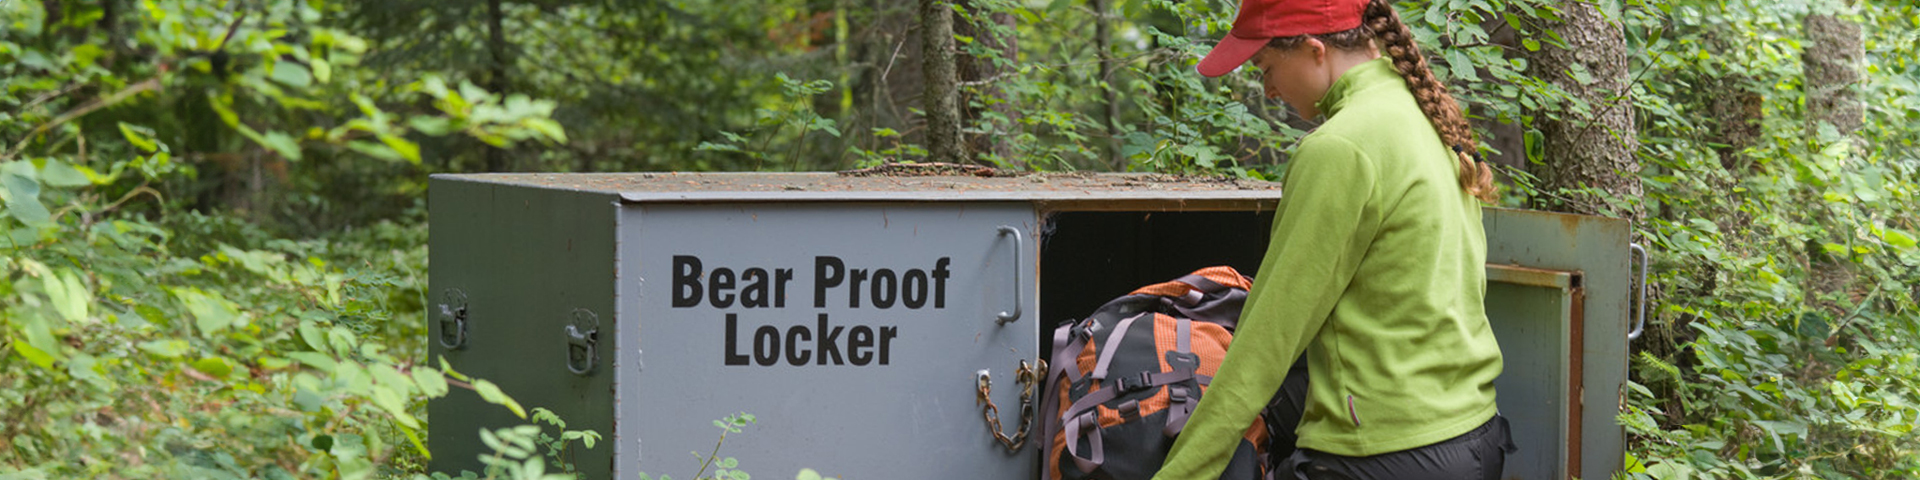 Un visiteur plaçant un sac à dos dans une armoire anti-ours.